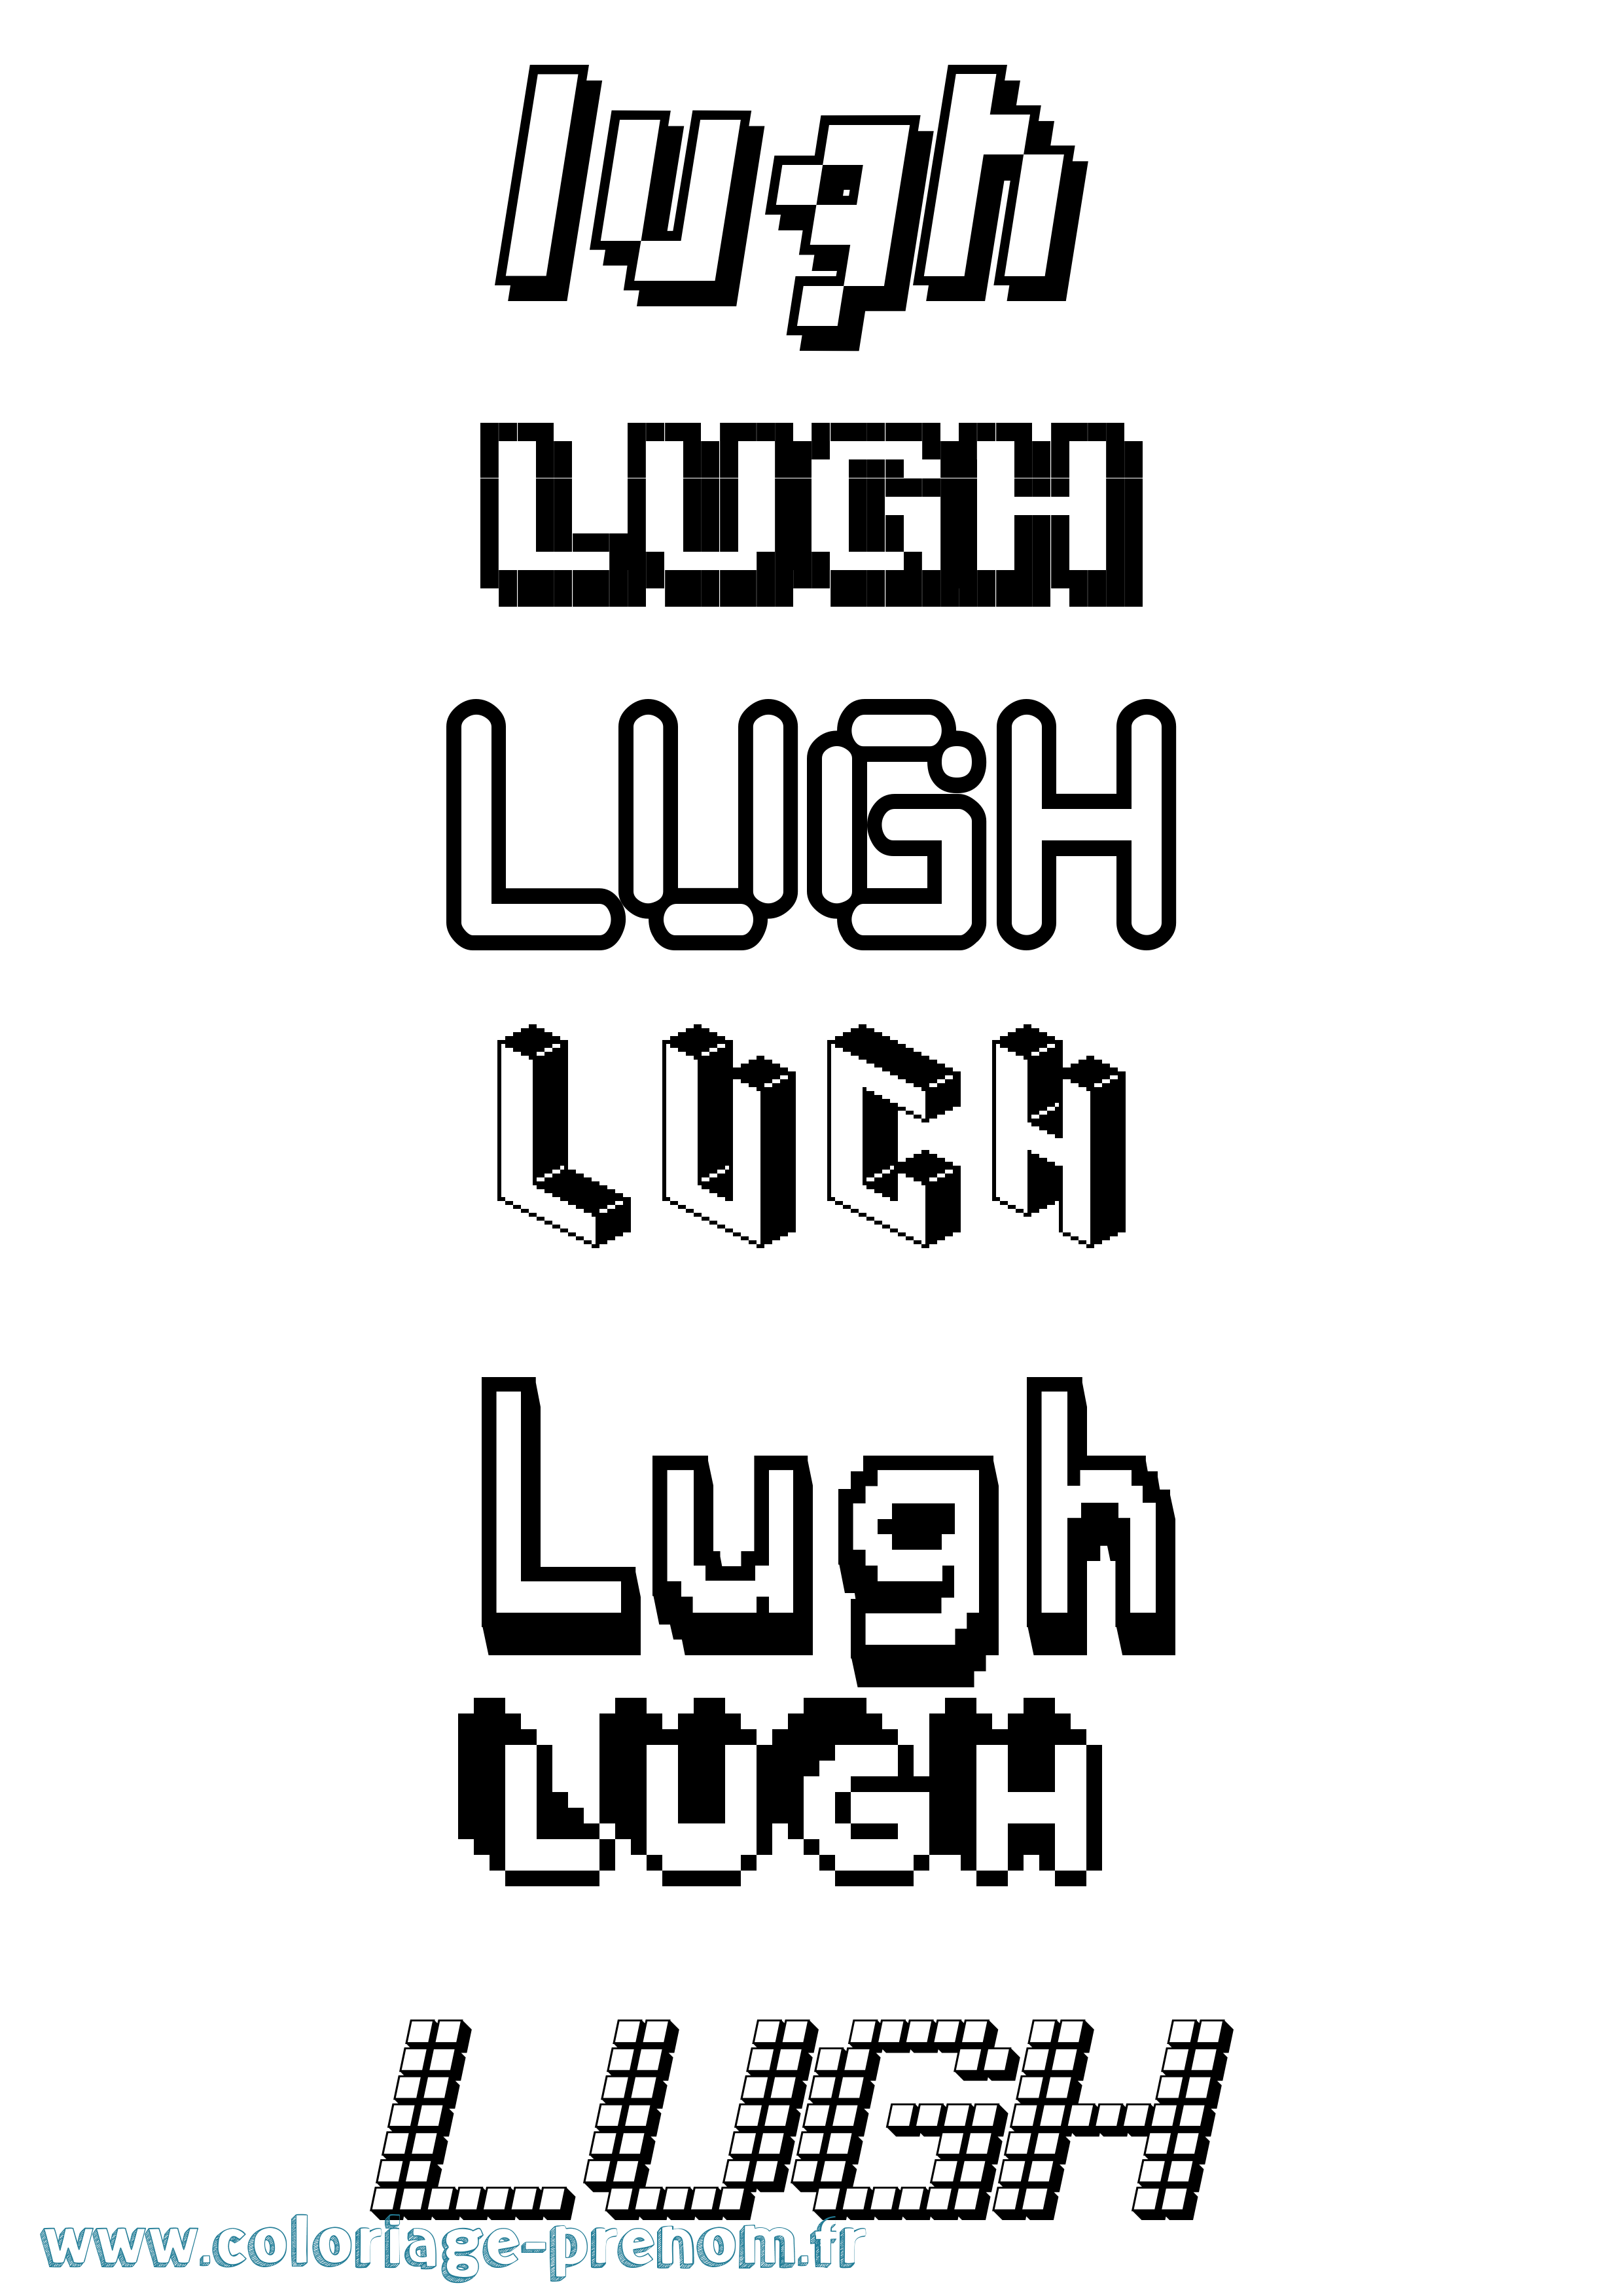 Coloriage prénom Lugh Pixel